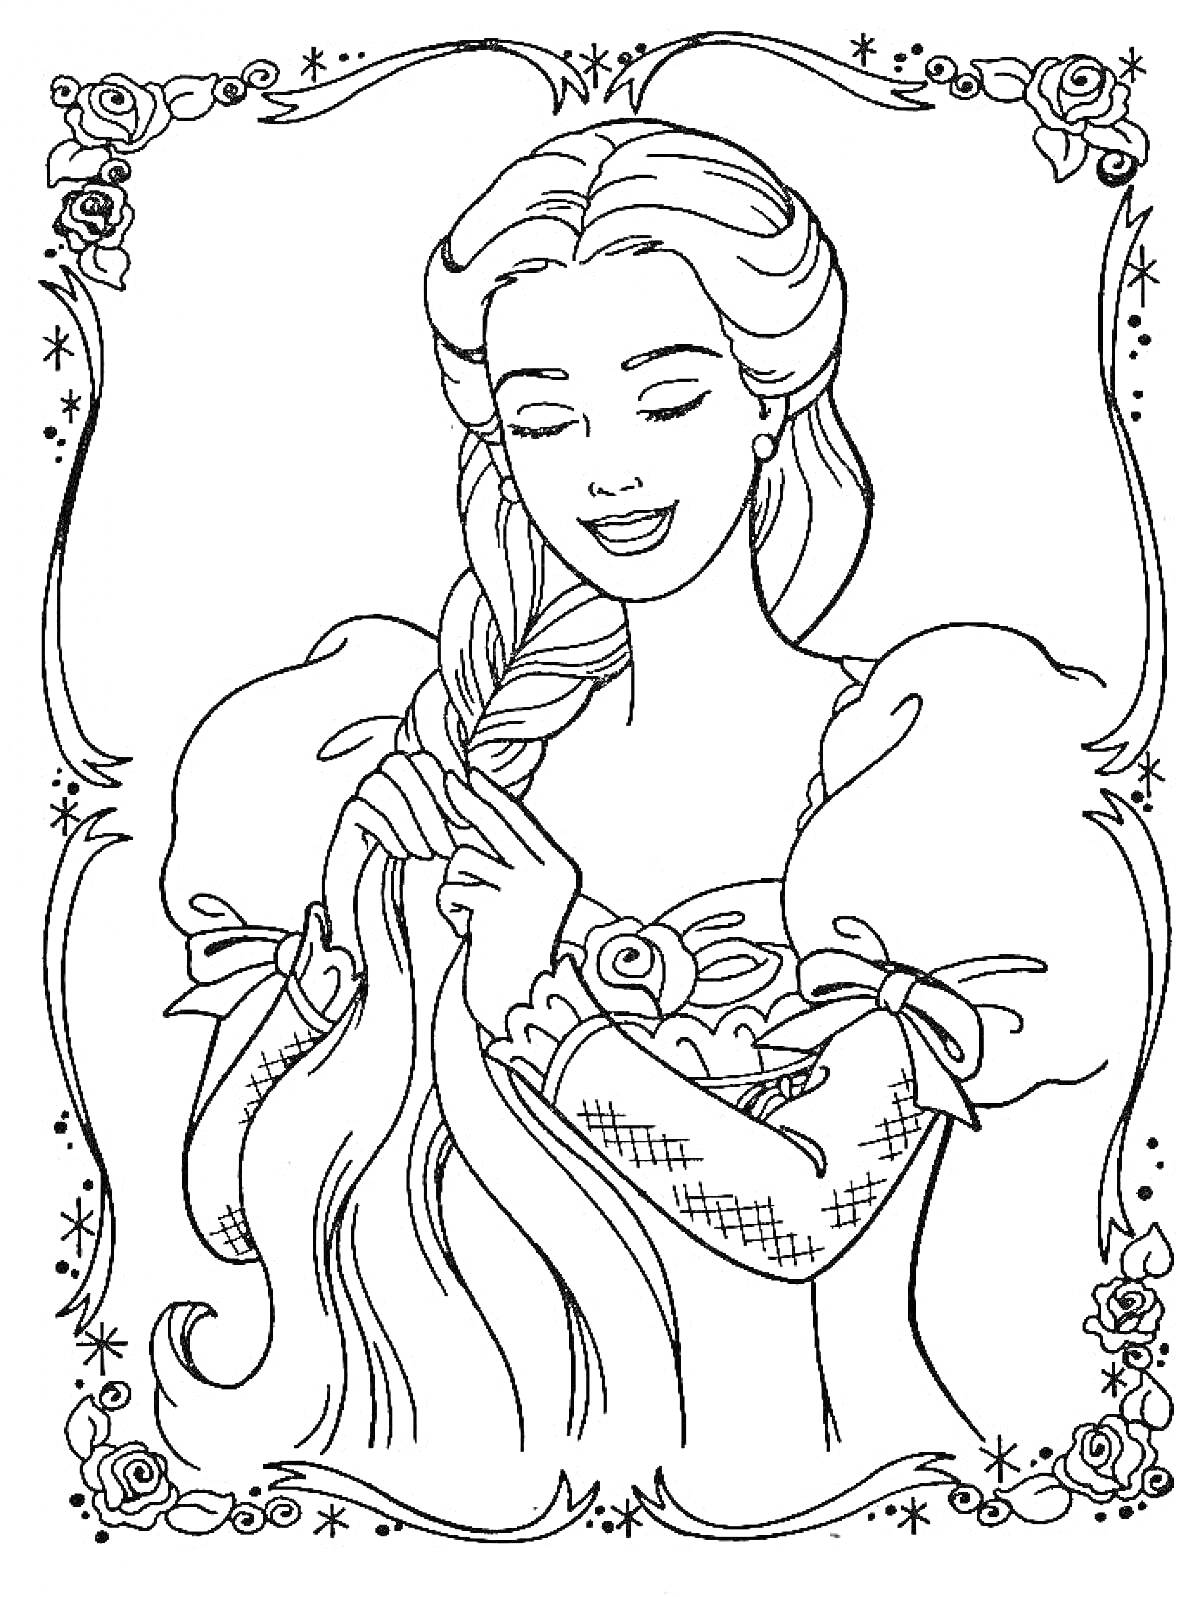 Барби с длинными волосами в платье с пышными рукавами, заплетающая косу, в декоративной рамке с цветами и звездами